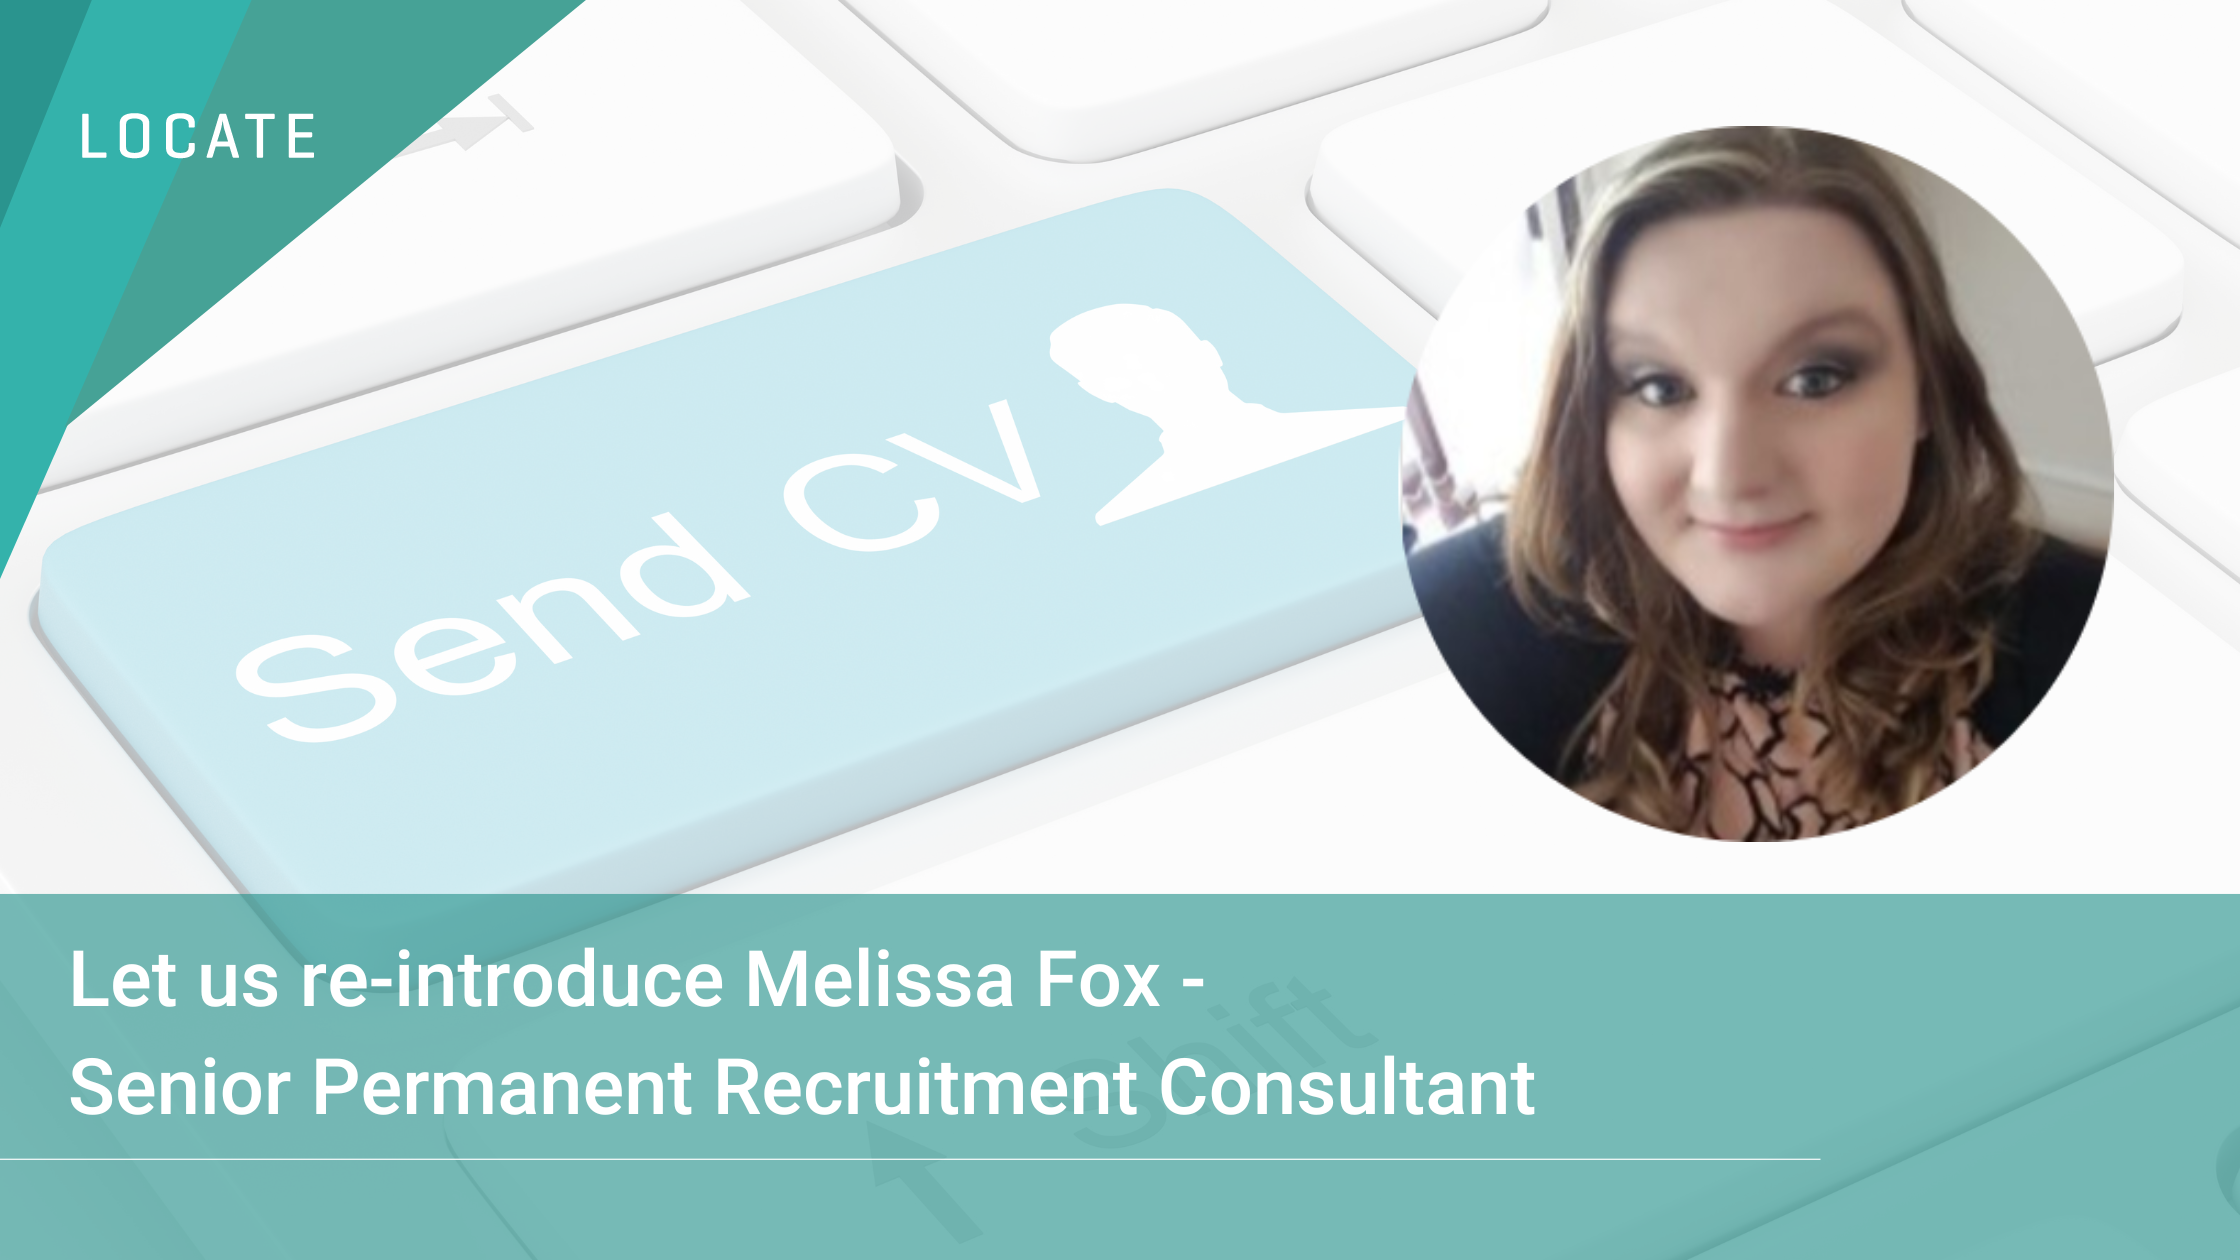 meet-melissa-fox-locates-senior-permanent-recruitment-consultant